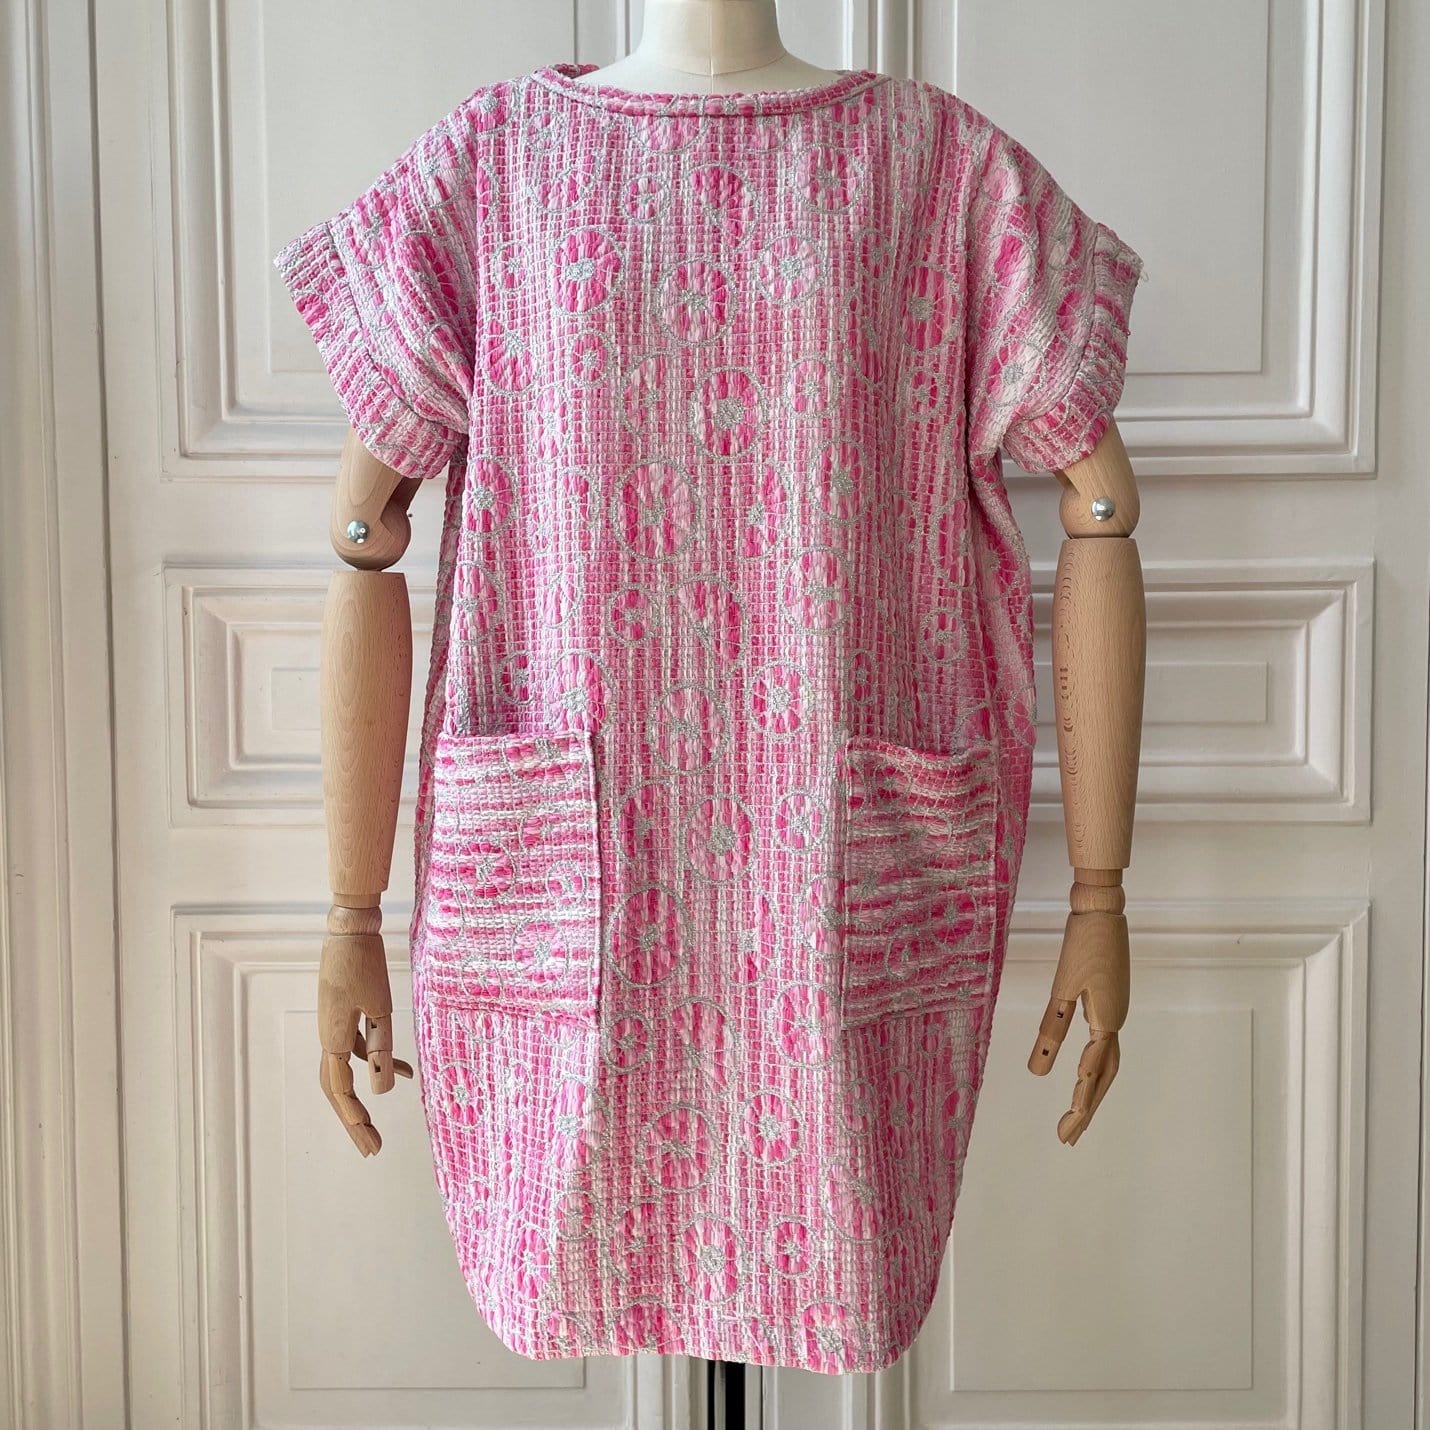 Robe en tweed rose et blanc tissé et fabriquée en France